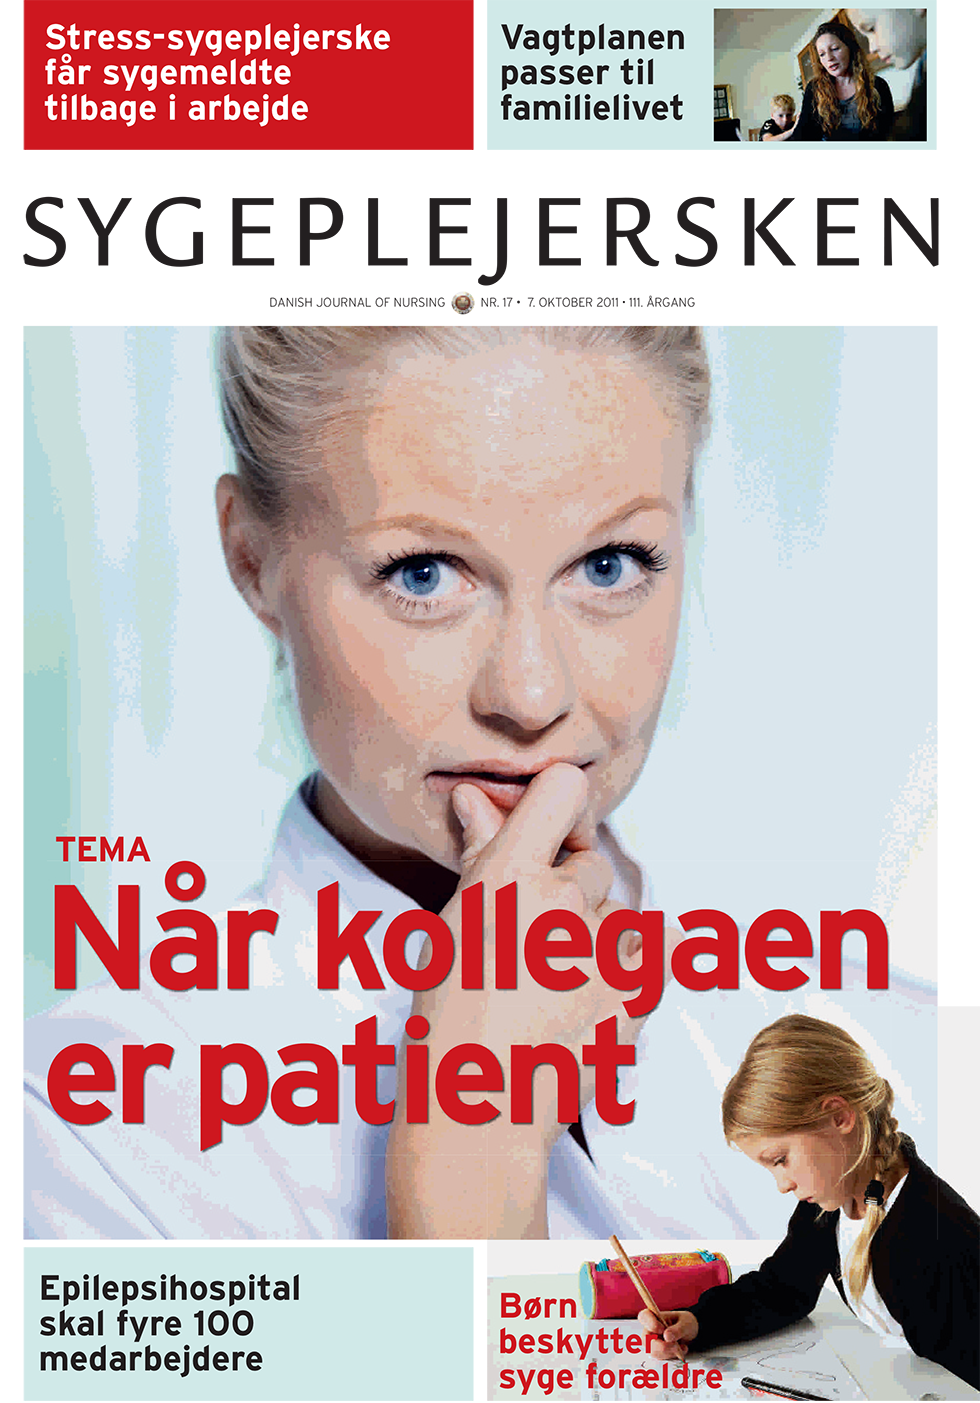 Sygeplejersken_2011_17 - magasinforsiden